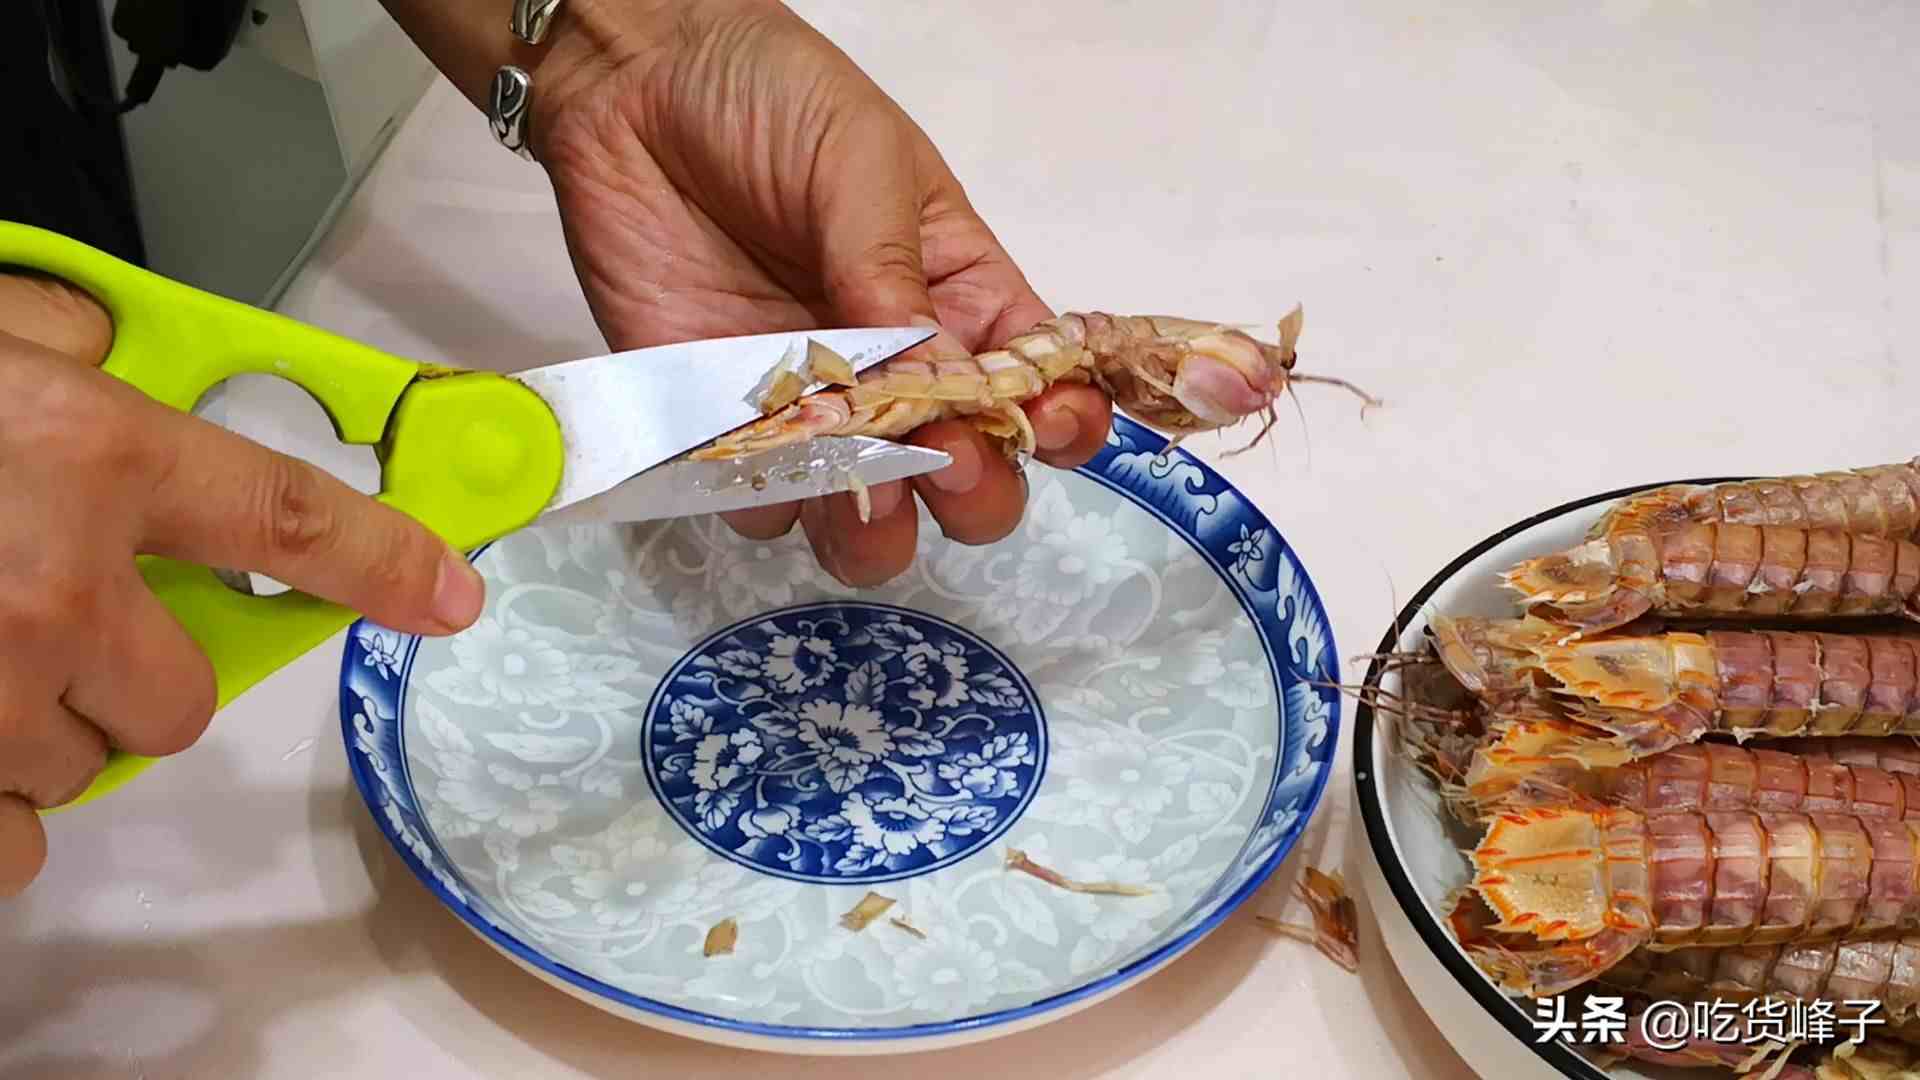 皮皮虾怎么剥|爱吃皮皮虾的要留意原来剥壳是如此的简单